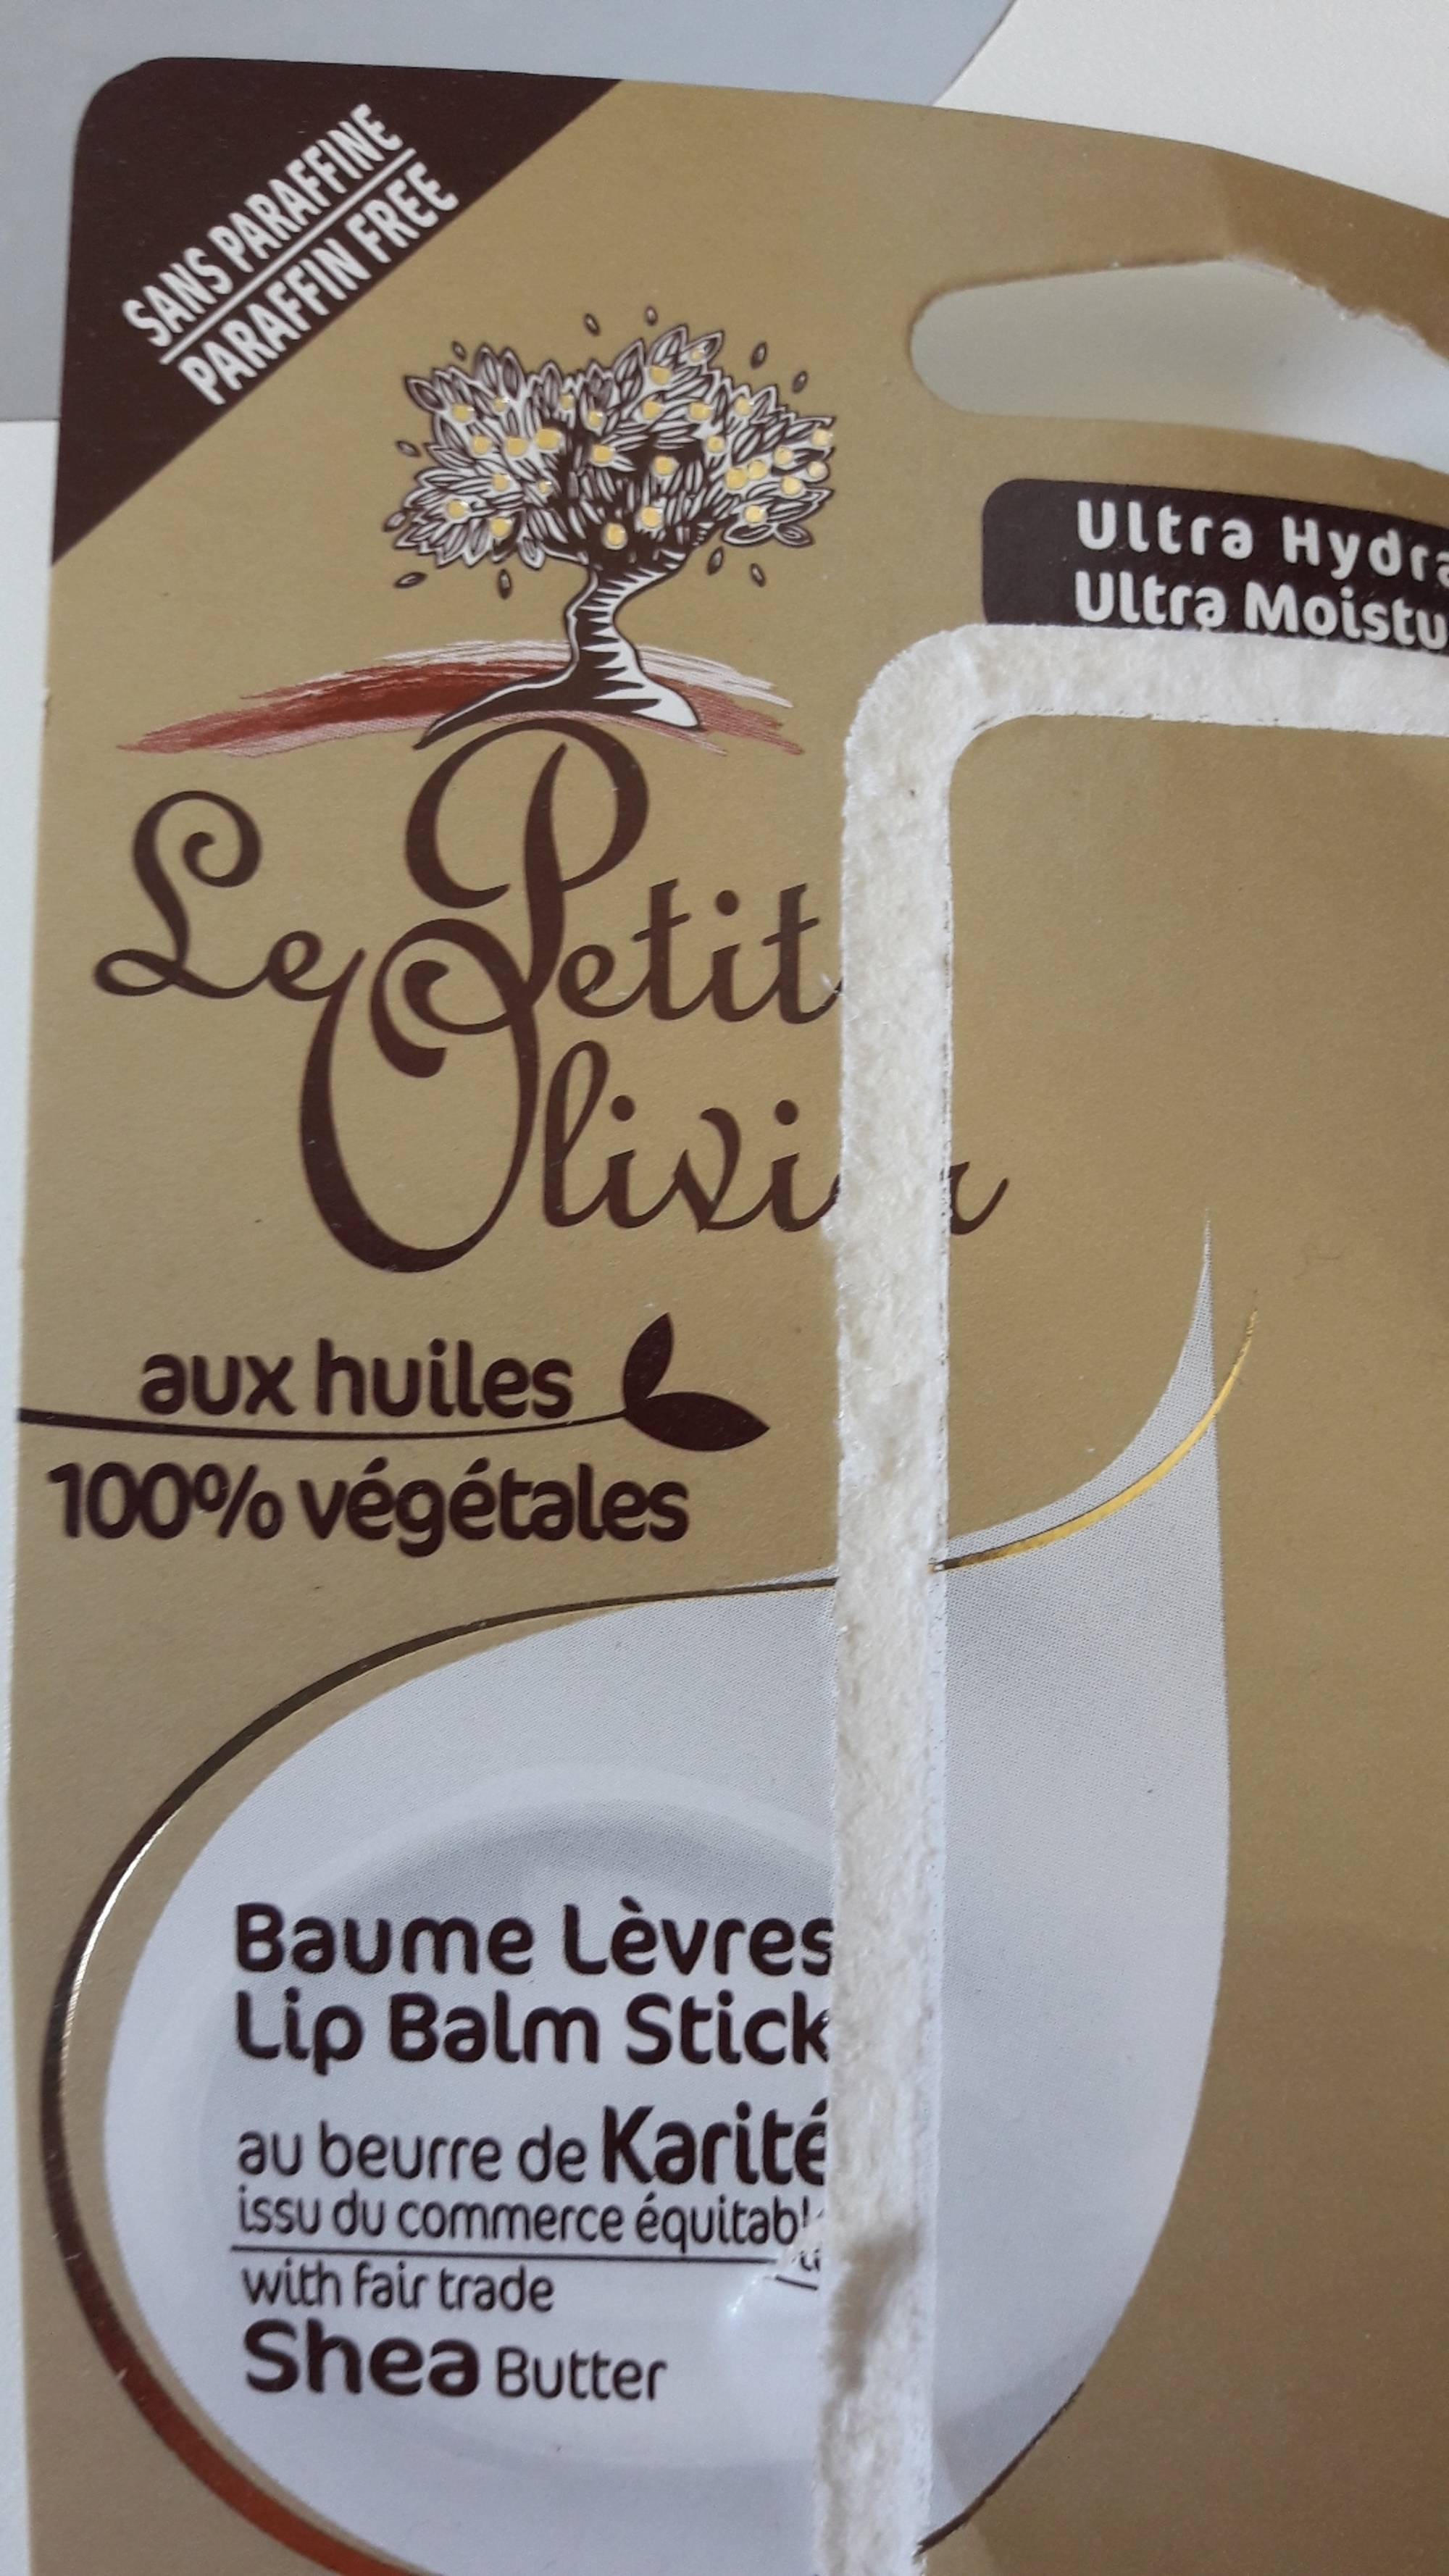 LE PETIT OLIVIER - Baume lèvres au beurre de karité